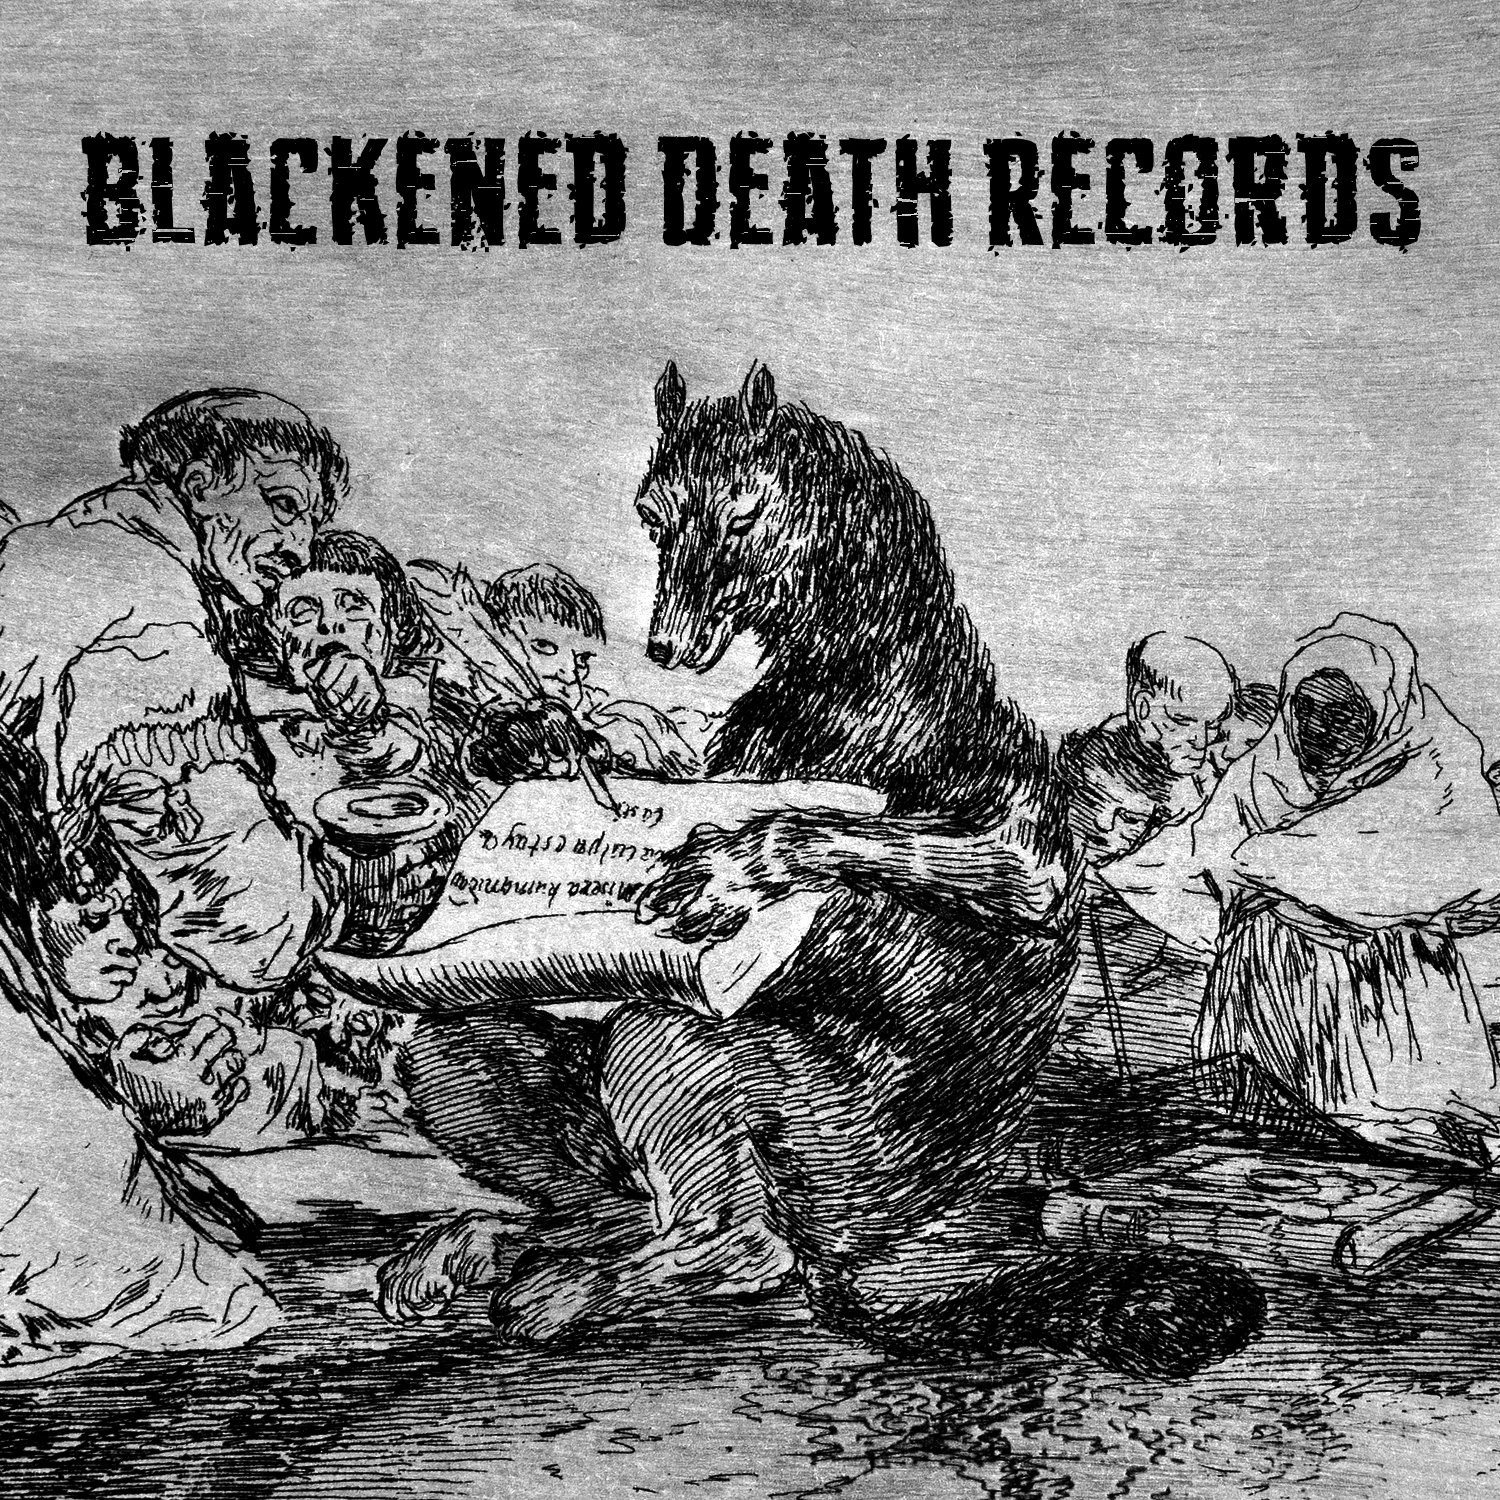 Blackened Death